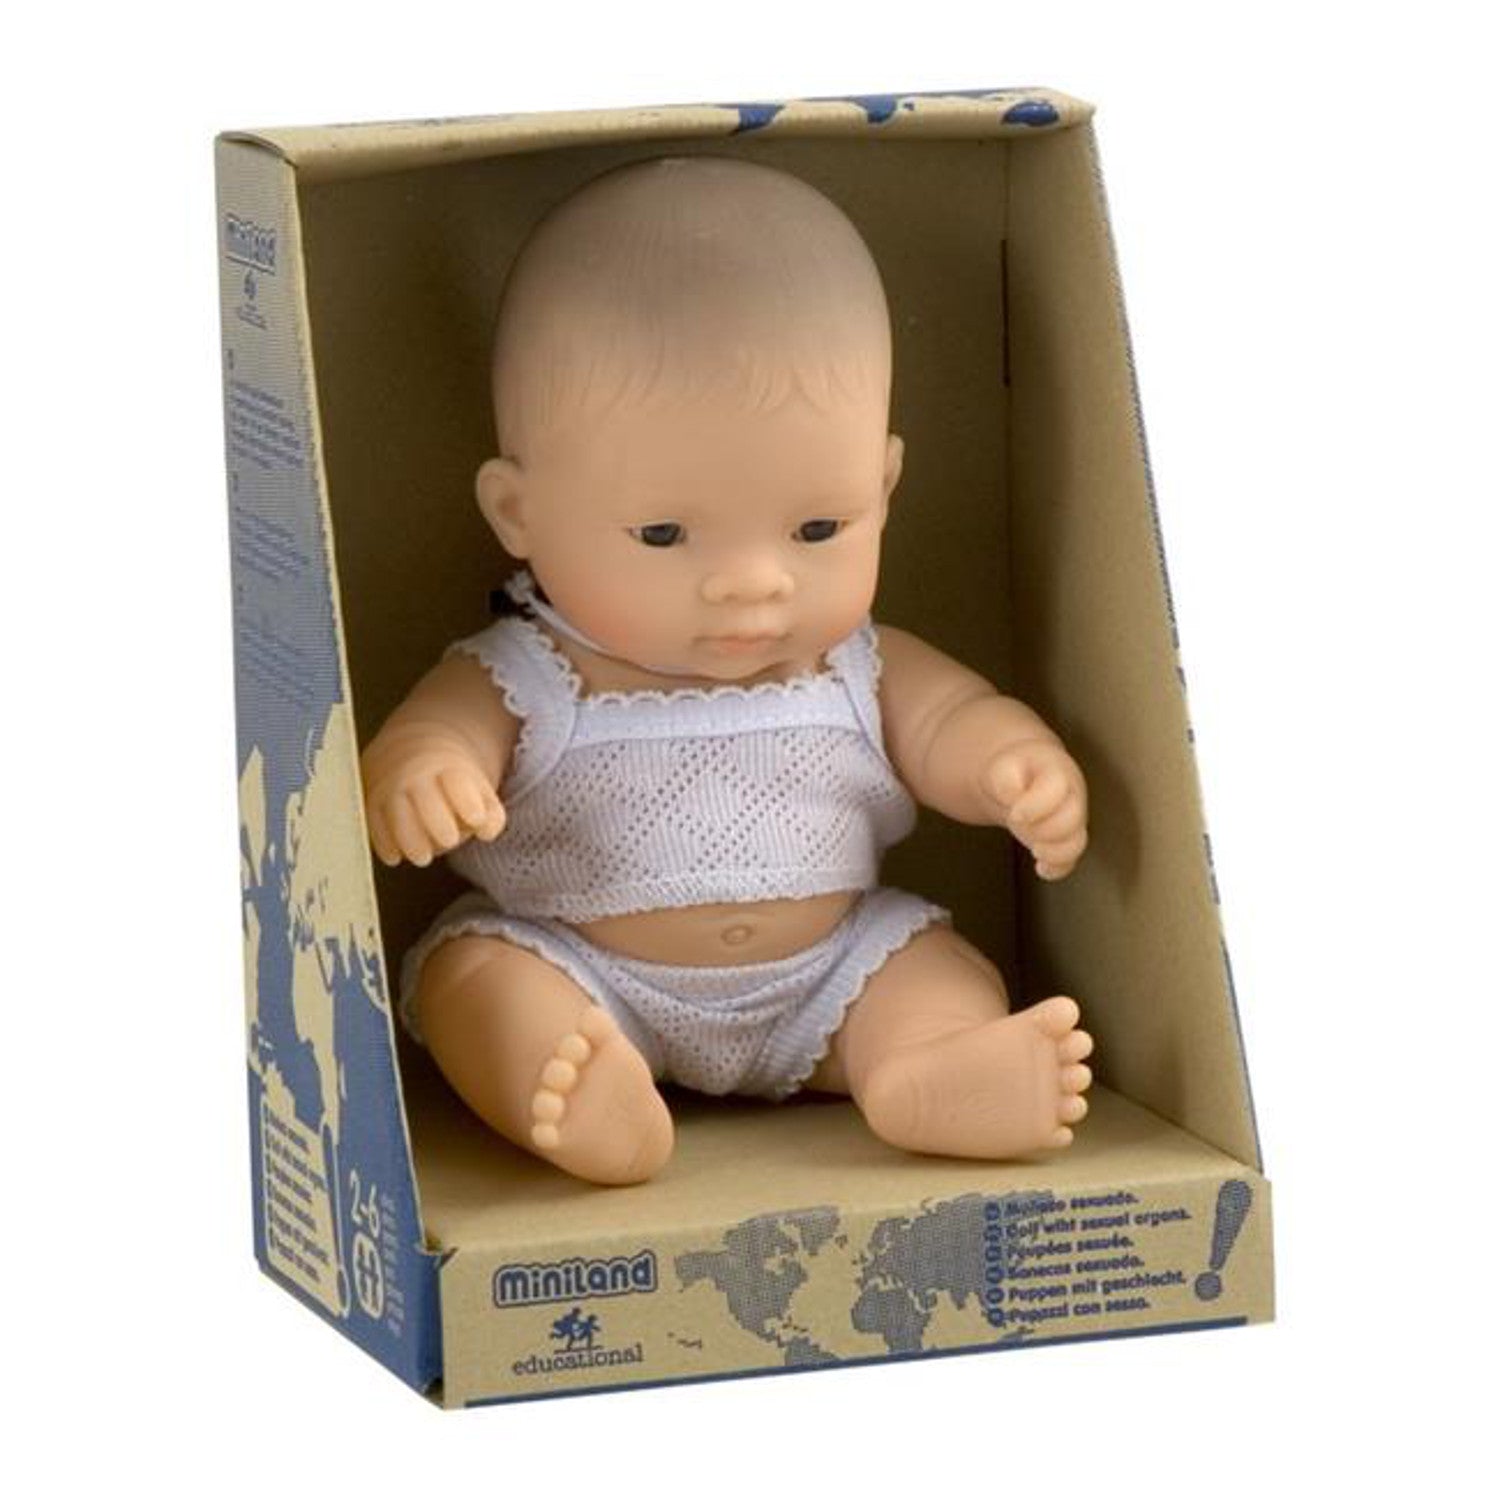 Miniland Baby Doll 21cm Asian Boy